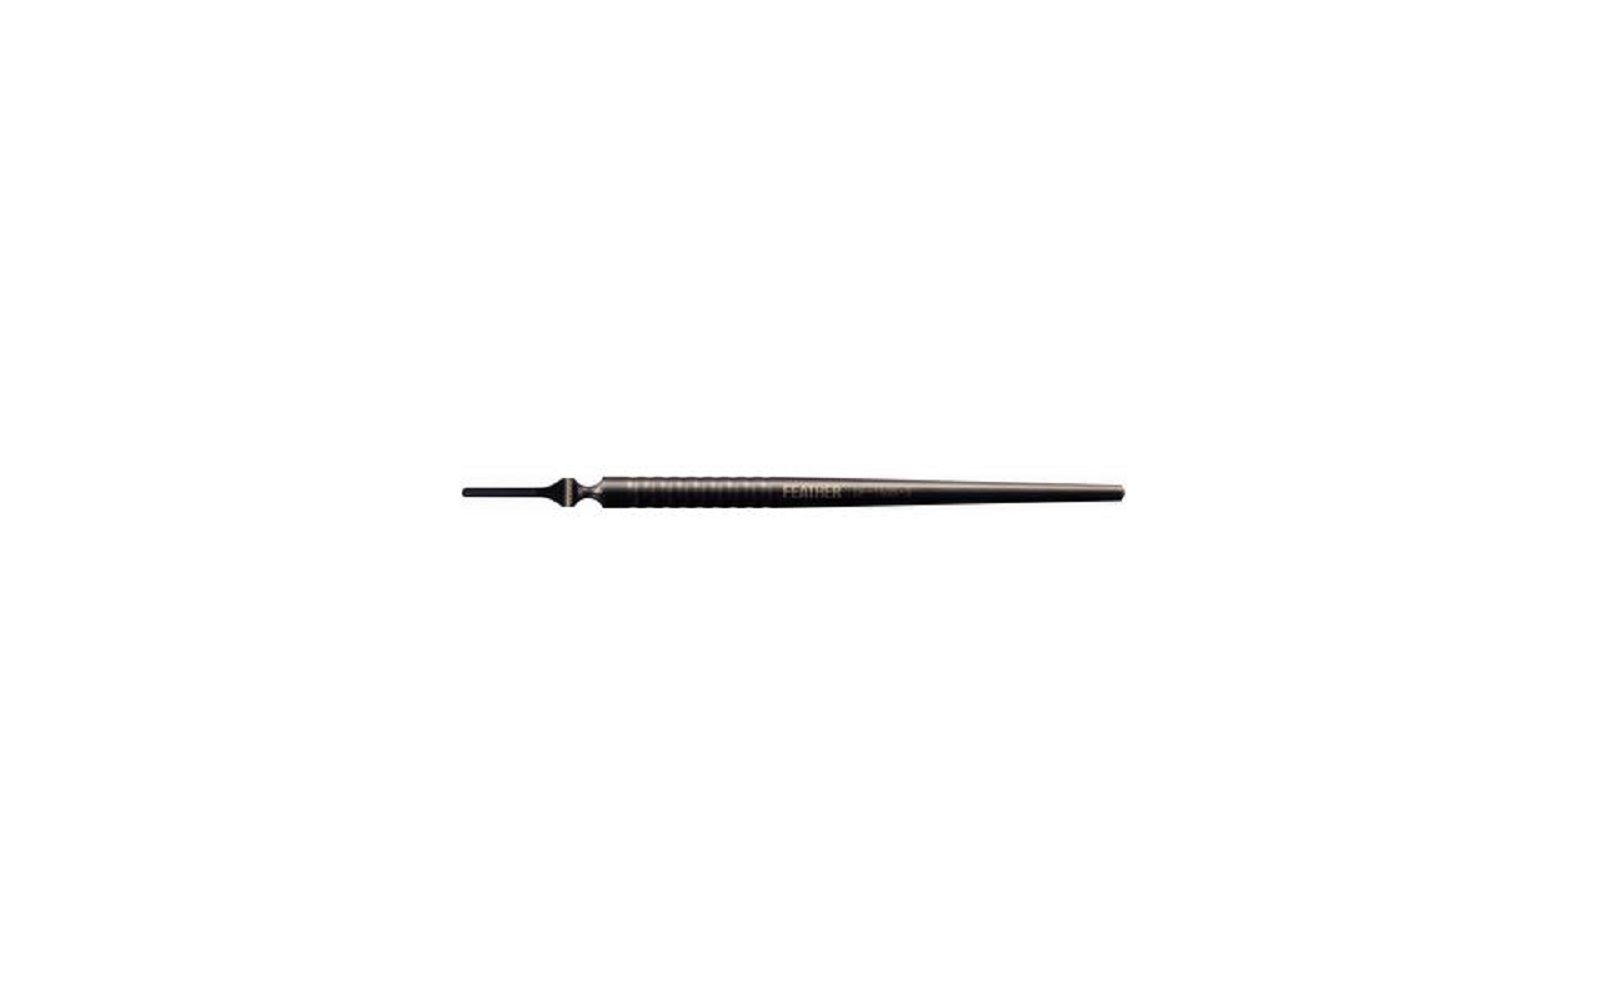 Microsurgical scalpel handles – # df-160s-3, titanium